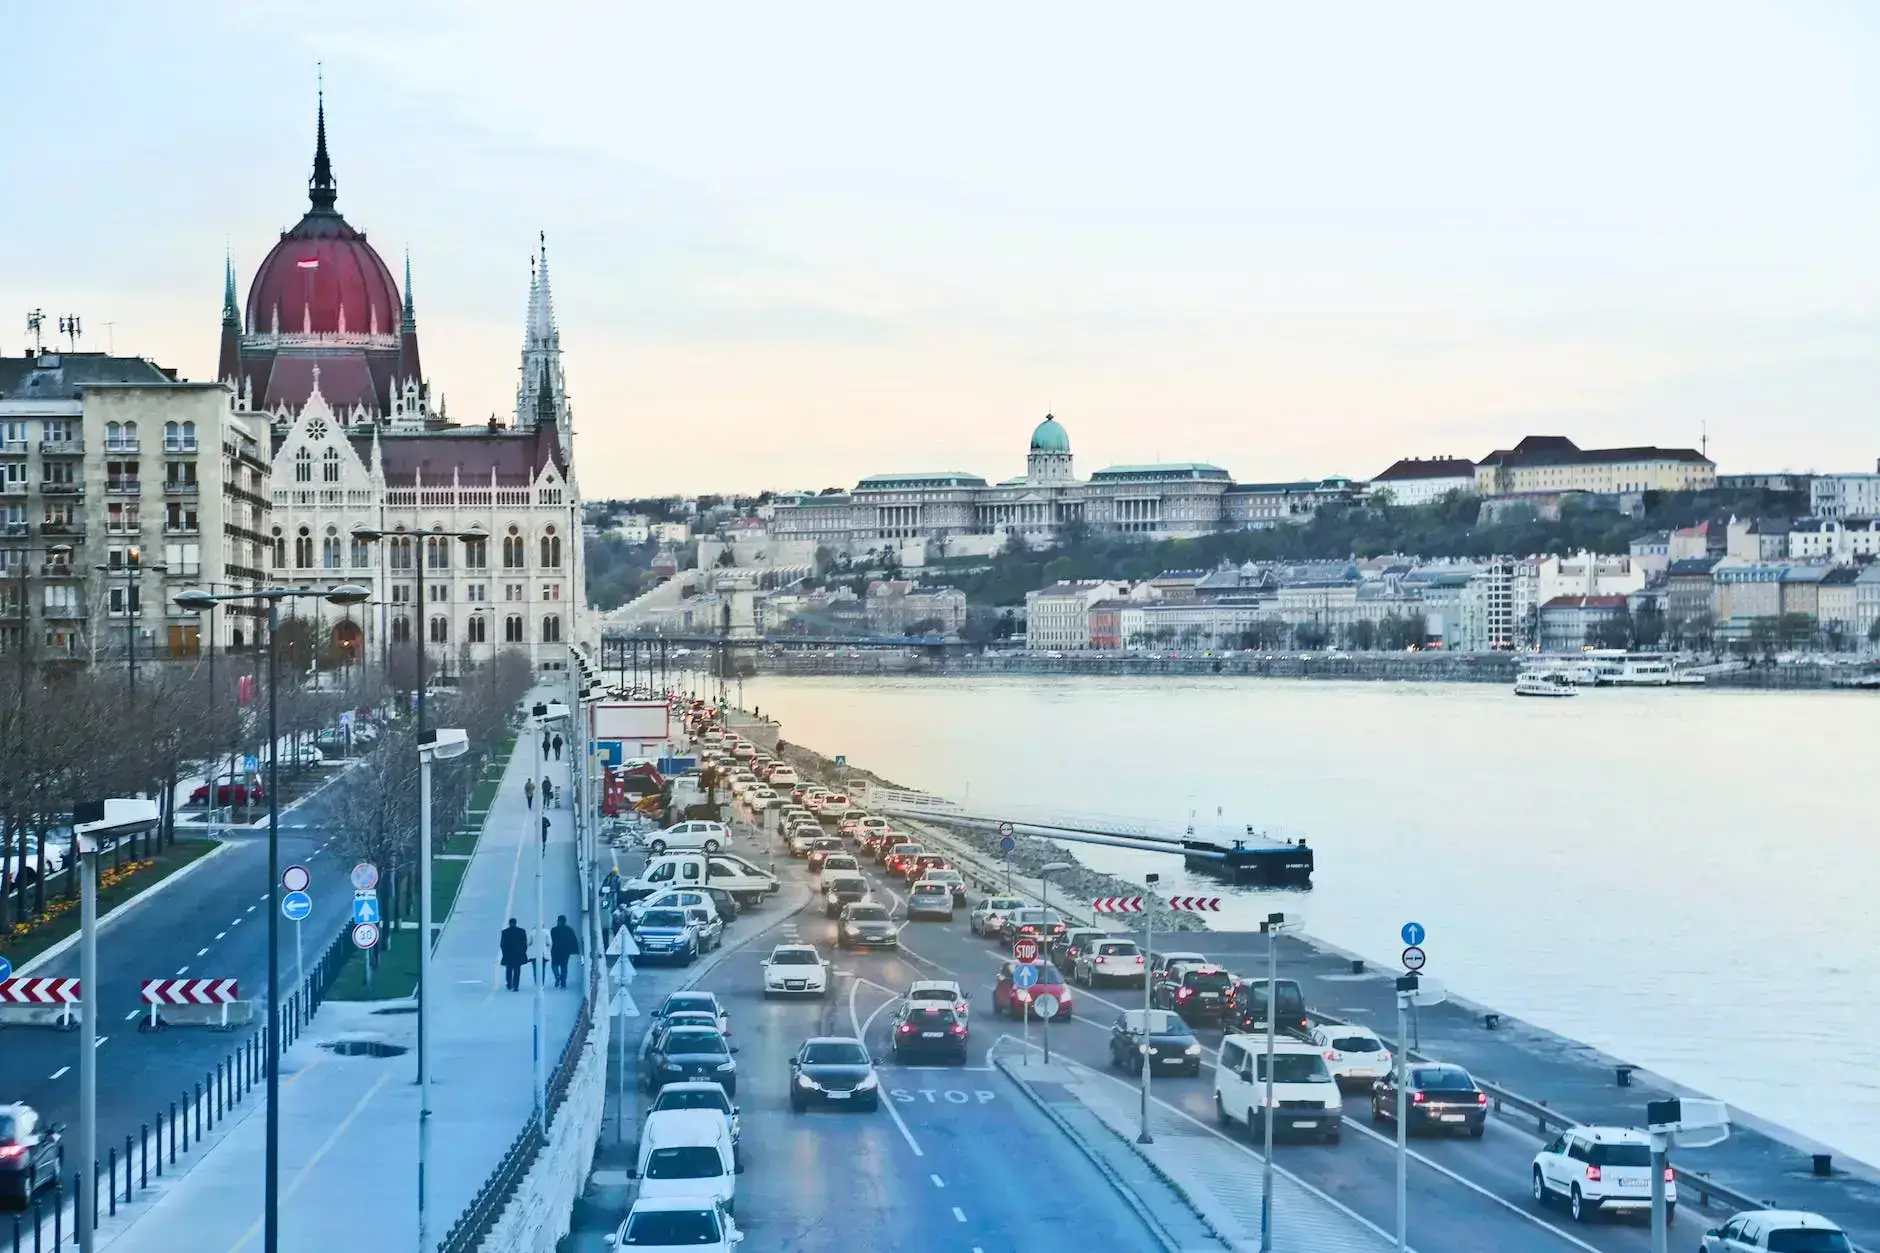 Ungarische Autobahnvignette – Reisemöglichkeiten in Ungarn auf der Autobahn